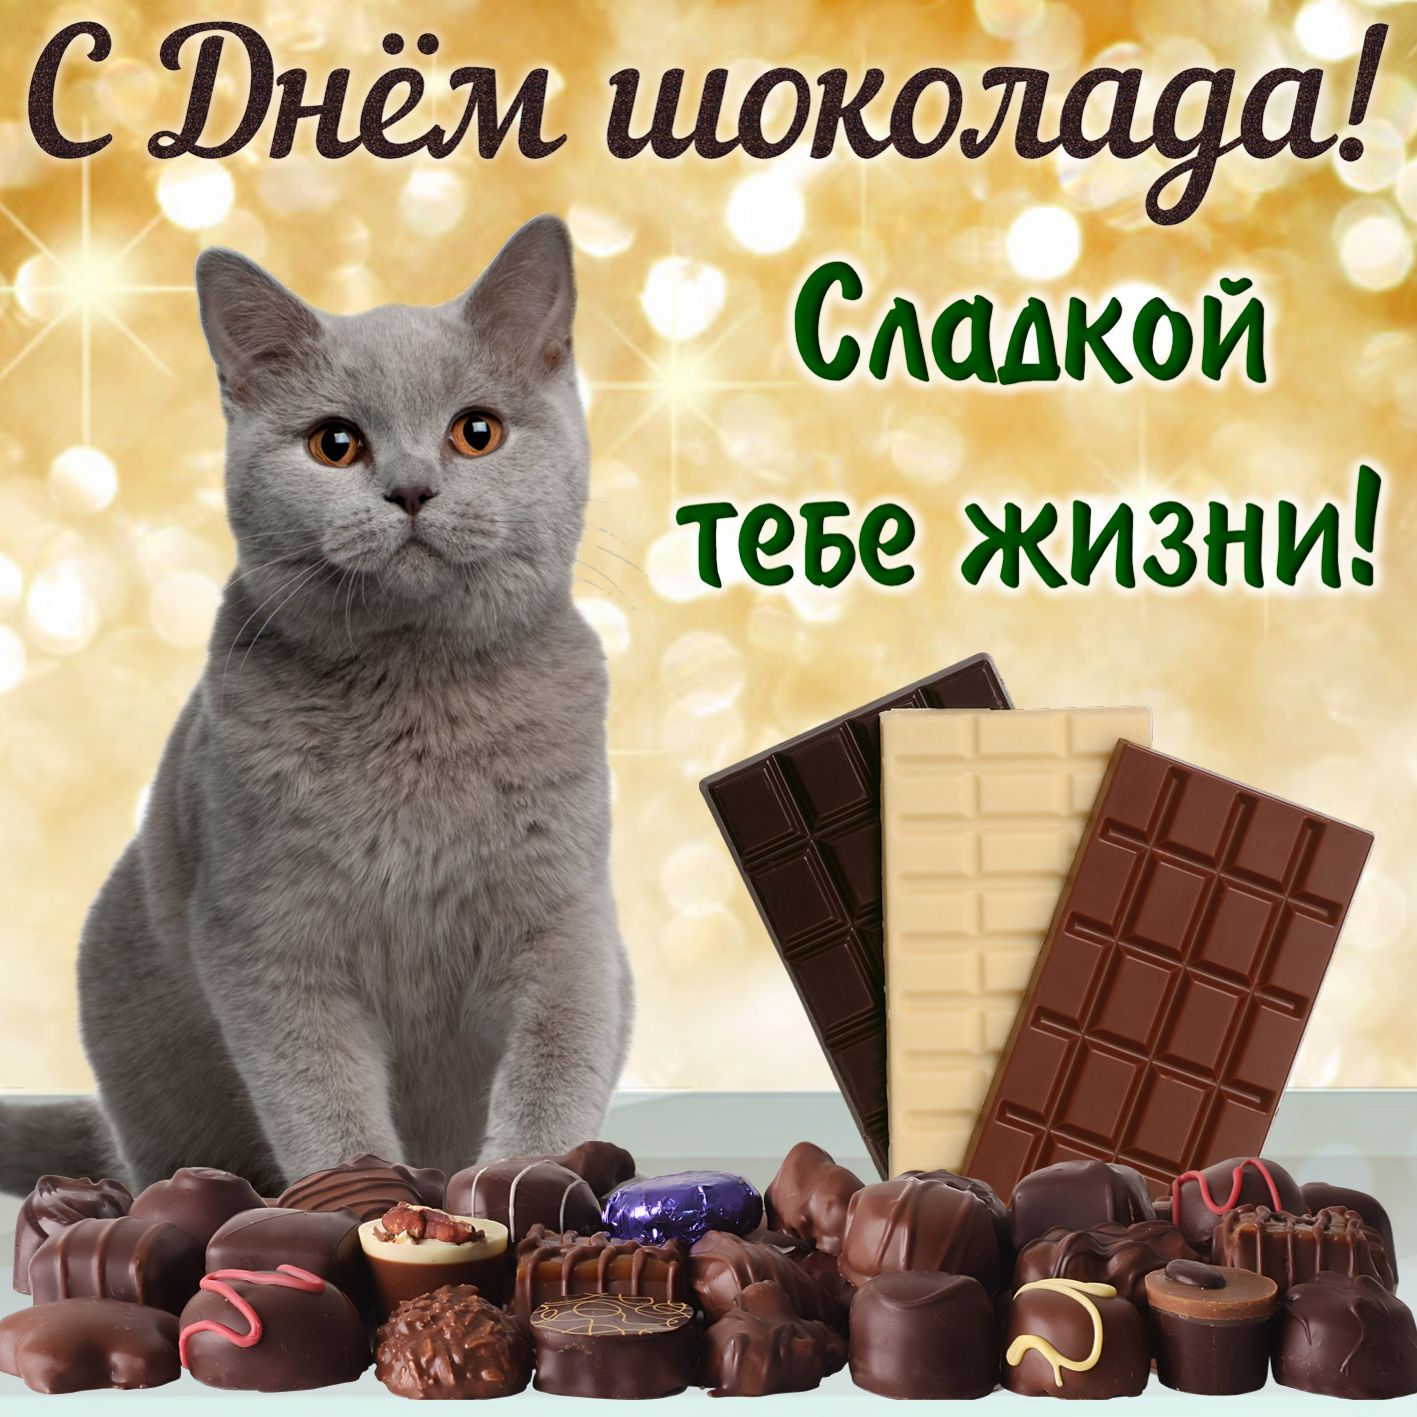 Всемирный день шоколада открытка с праздником с днём шоколада с кошкой. Открытка , картинка с днём шоколада праздник отмечаемый ежегодно  11 июля ,родиной дня шоколада считается Франция , открытка ко дню шоколада с котиком , котёнком.